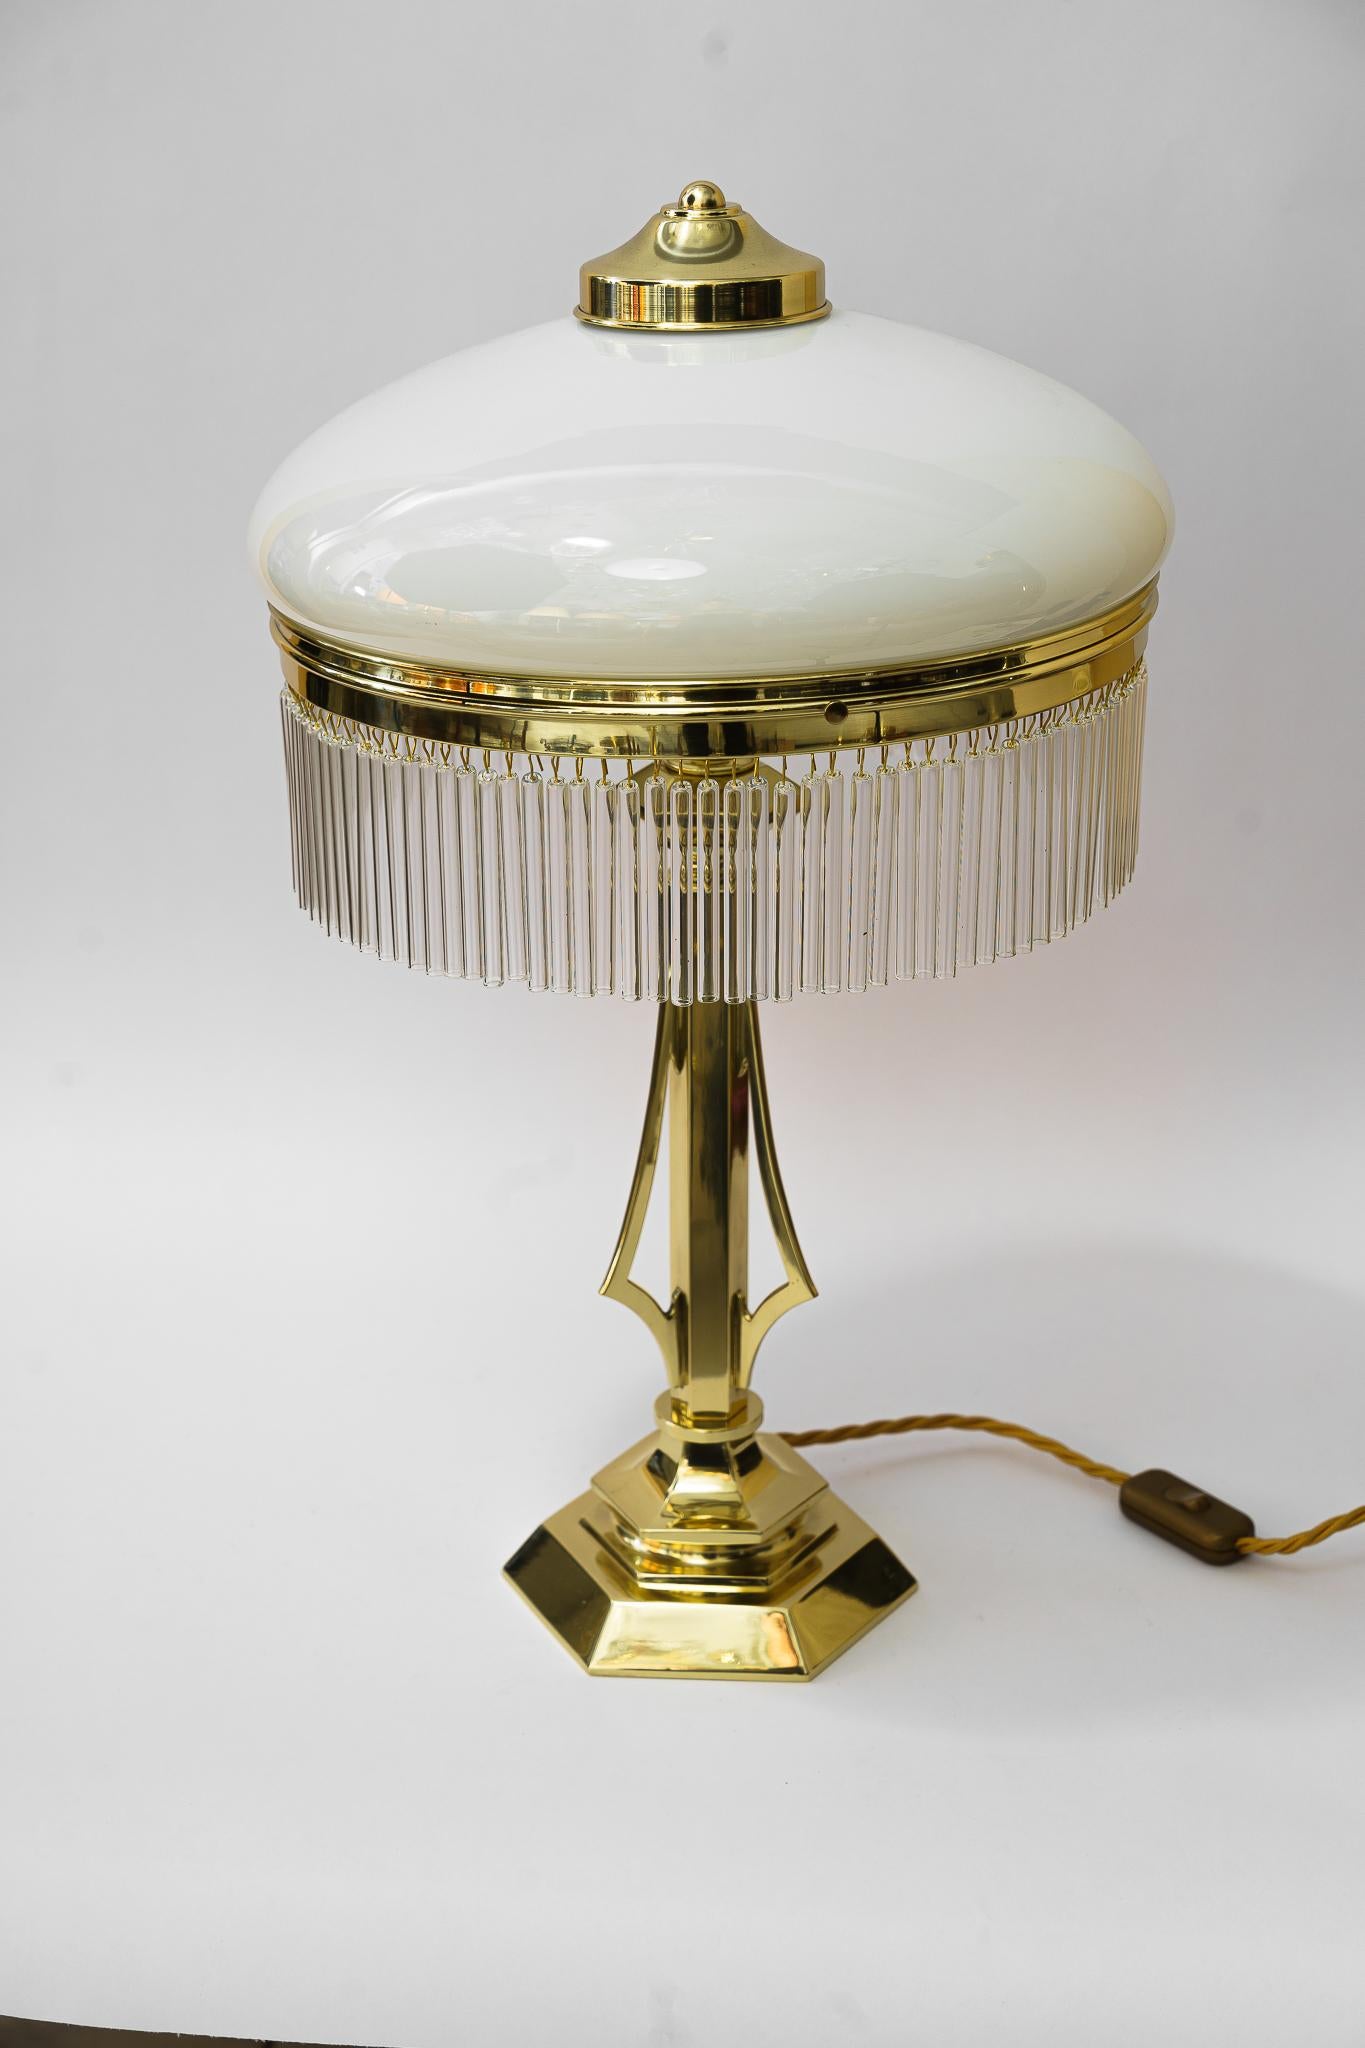 Art-Déco-Tischlampe Vienna aus den 1920er Jahren
Die Glasstäbe werden ersetzt ( neu )
Messing poliert und emailliert